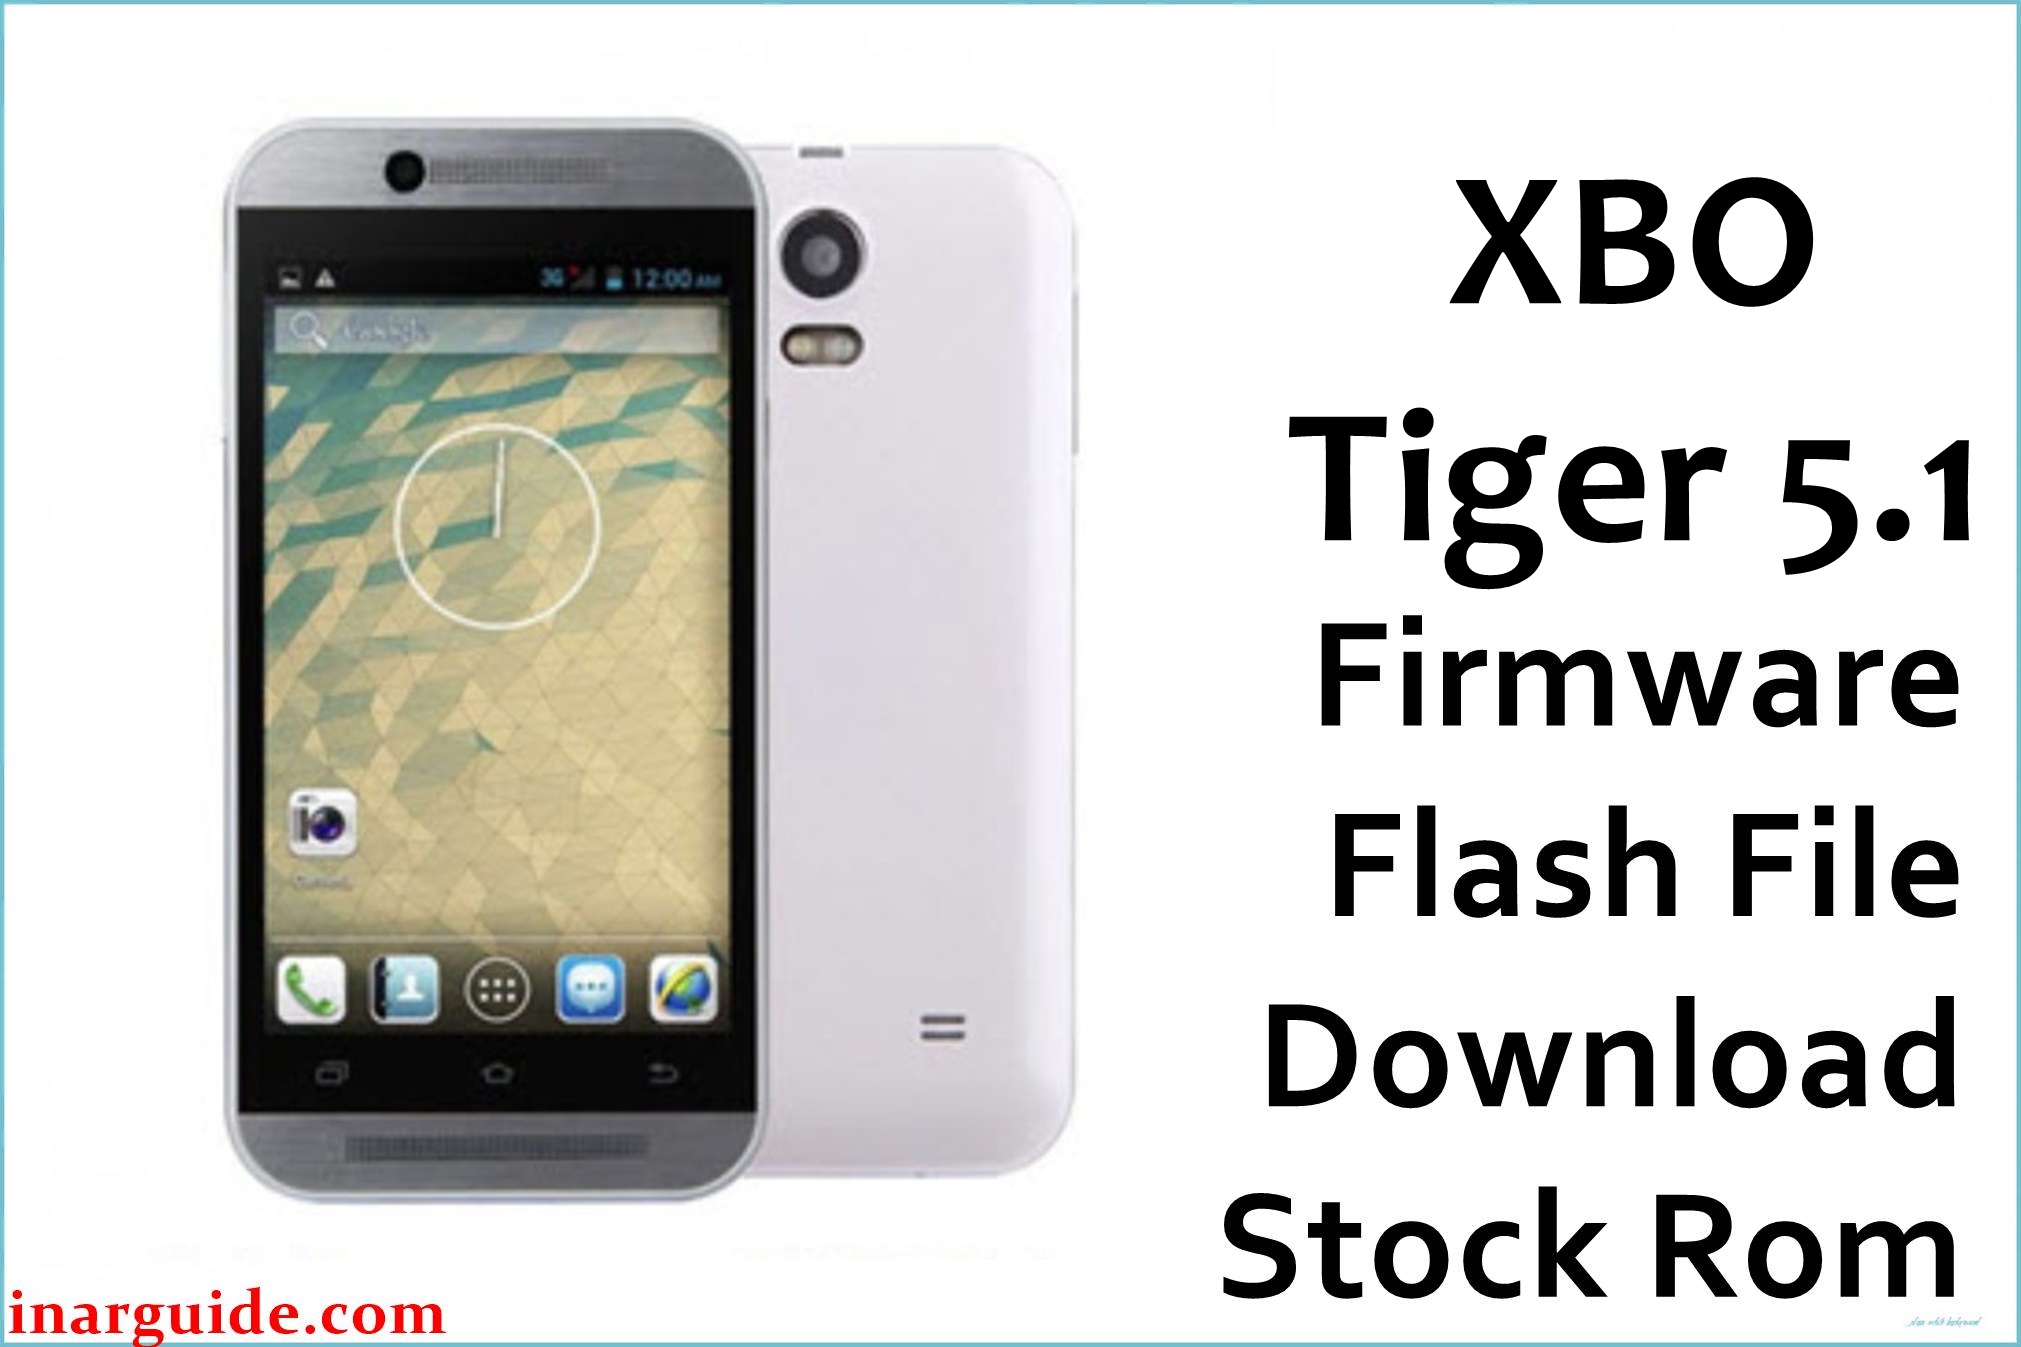 XBO Tiger 5.1